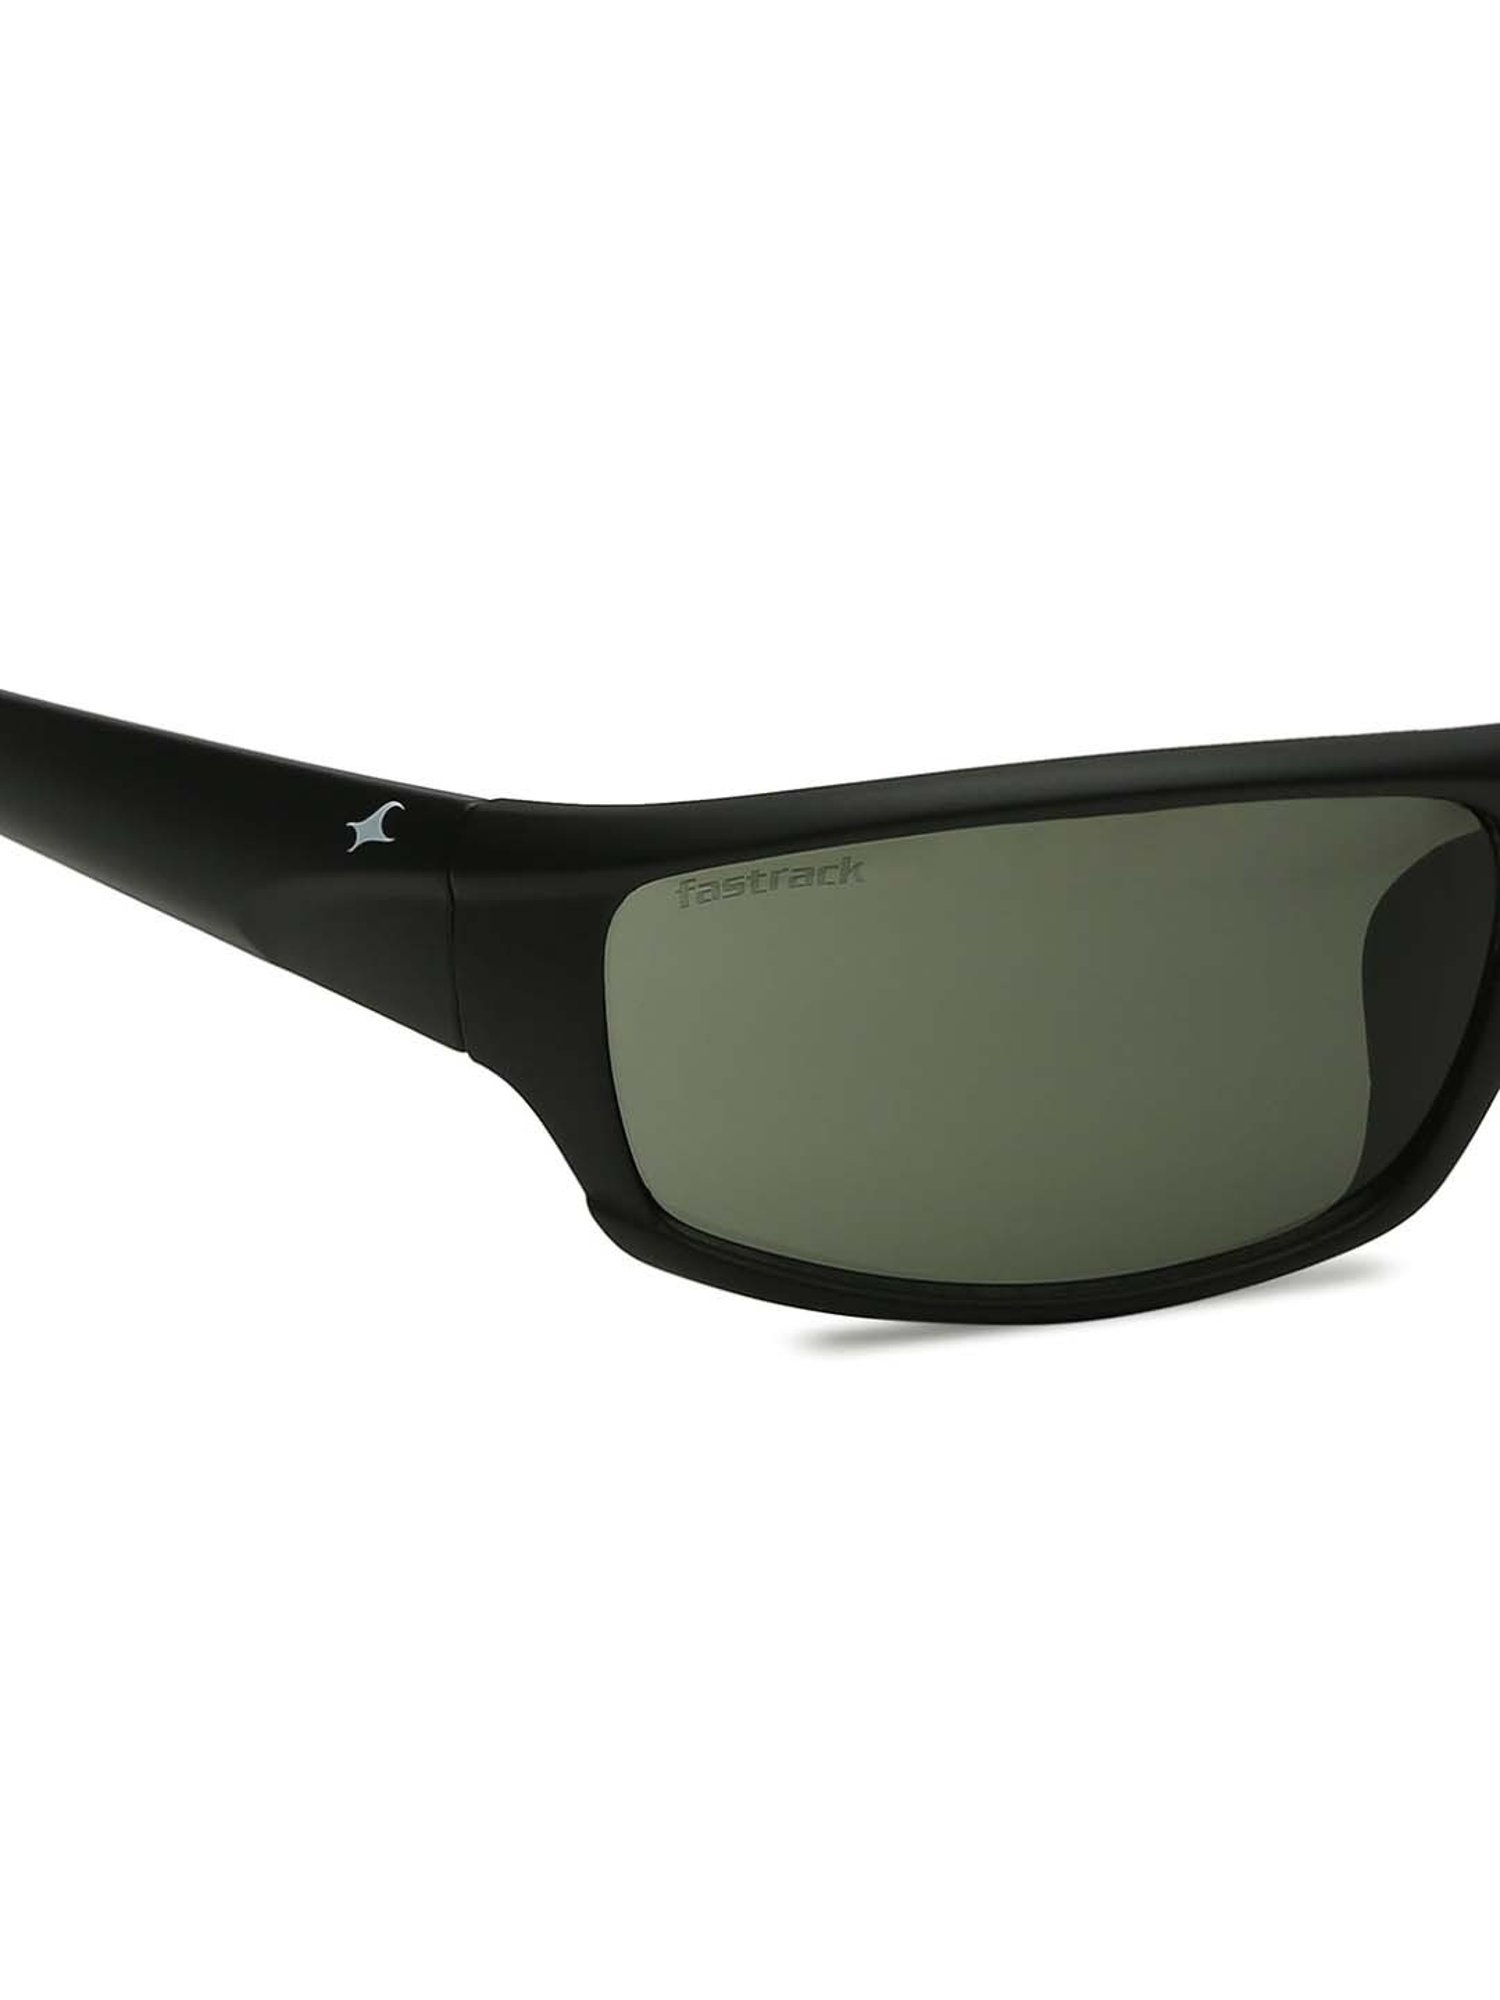 Buy fastrack Men Sunglasses [P303BU2] Online - Best Price fastrack Men  Sunglasses [P303BU2] - Justdial Shop Online.